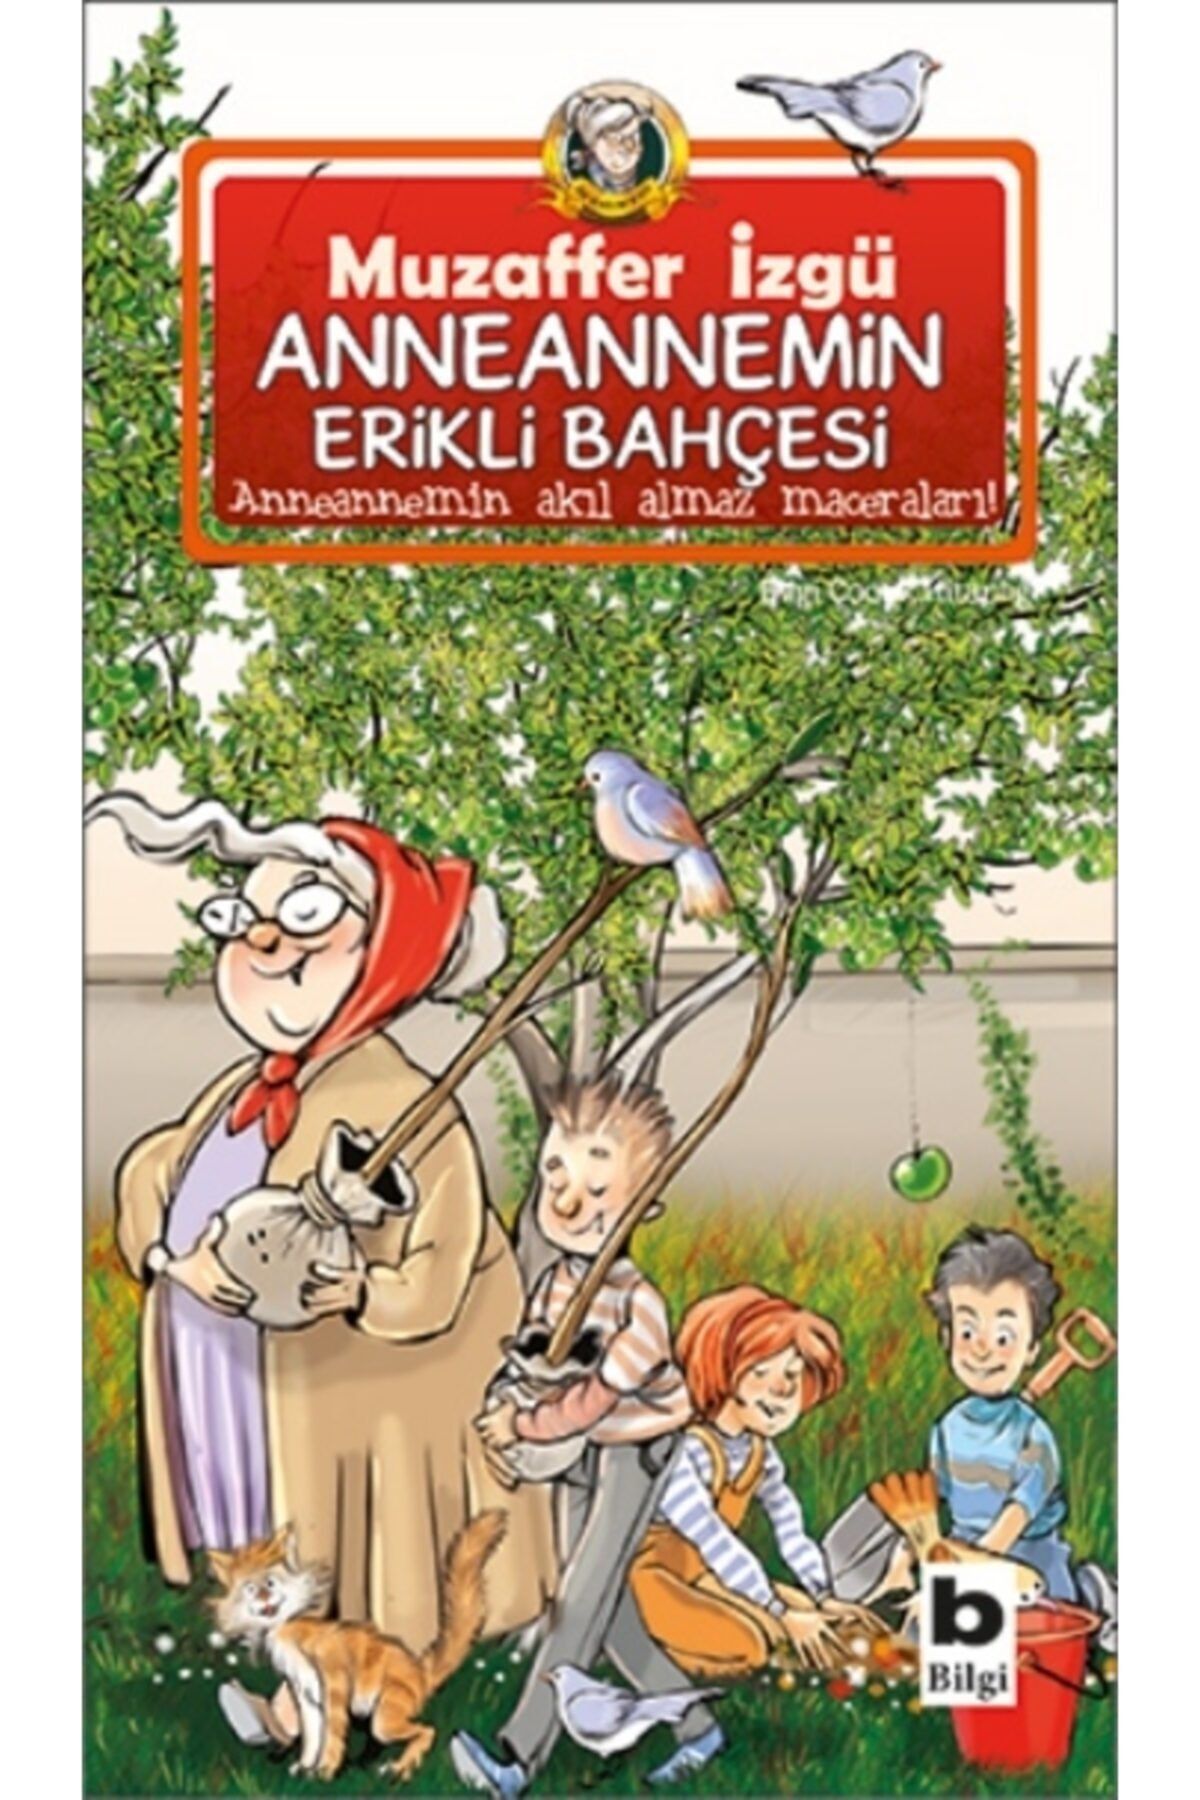 Bilgi Yayınları Anneannemin Erikli Bahçesi | Muzaffer Izgü |